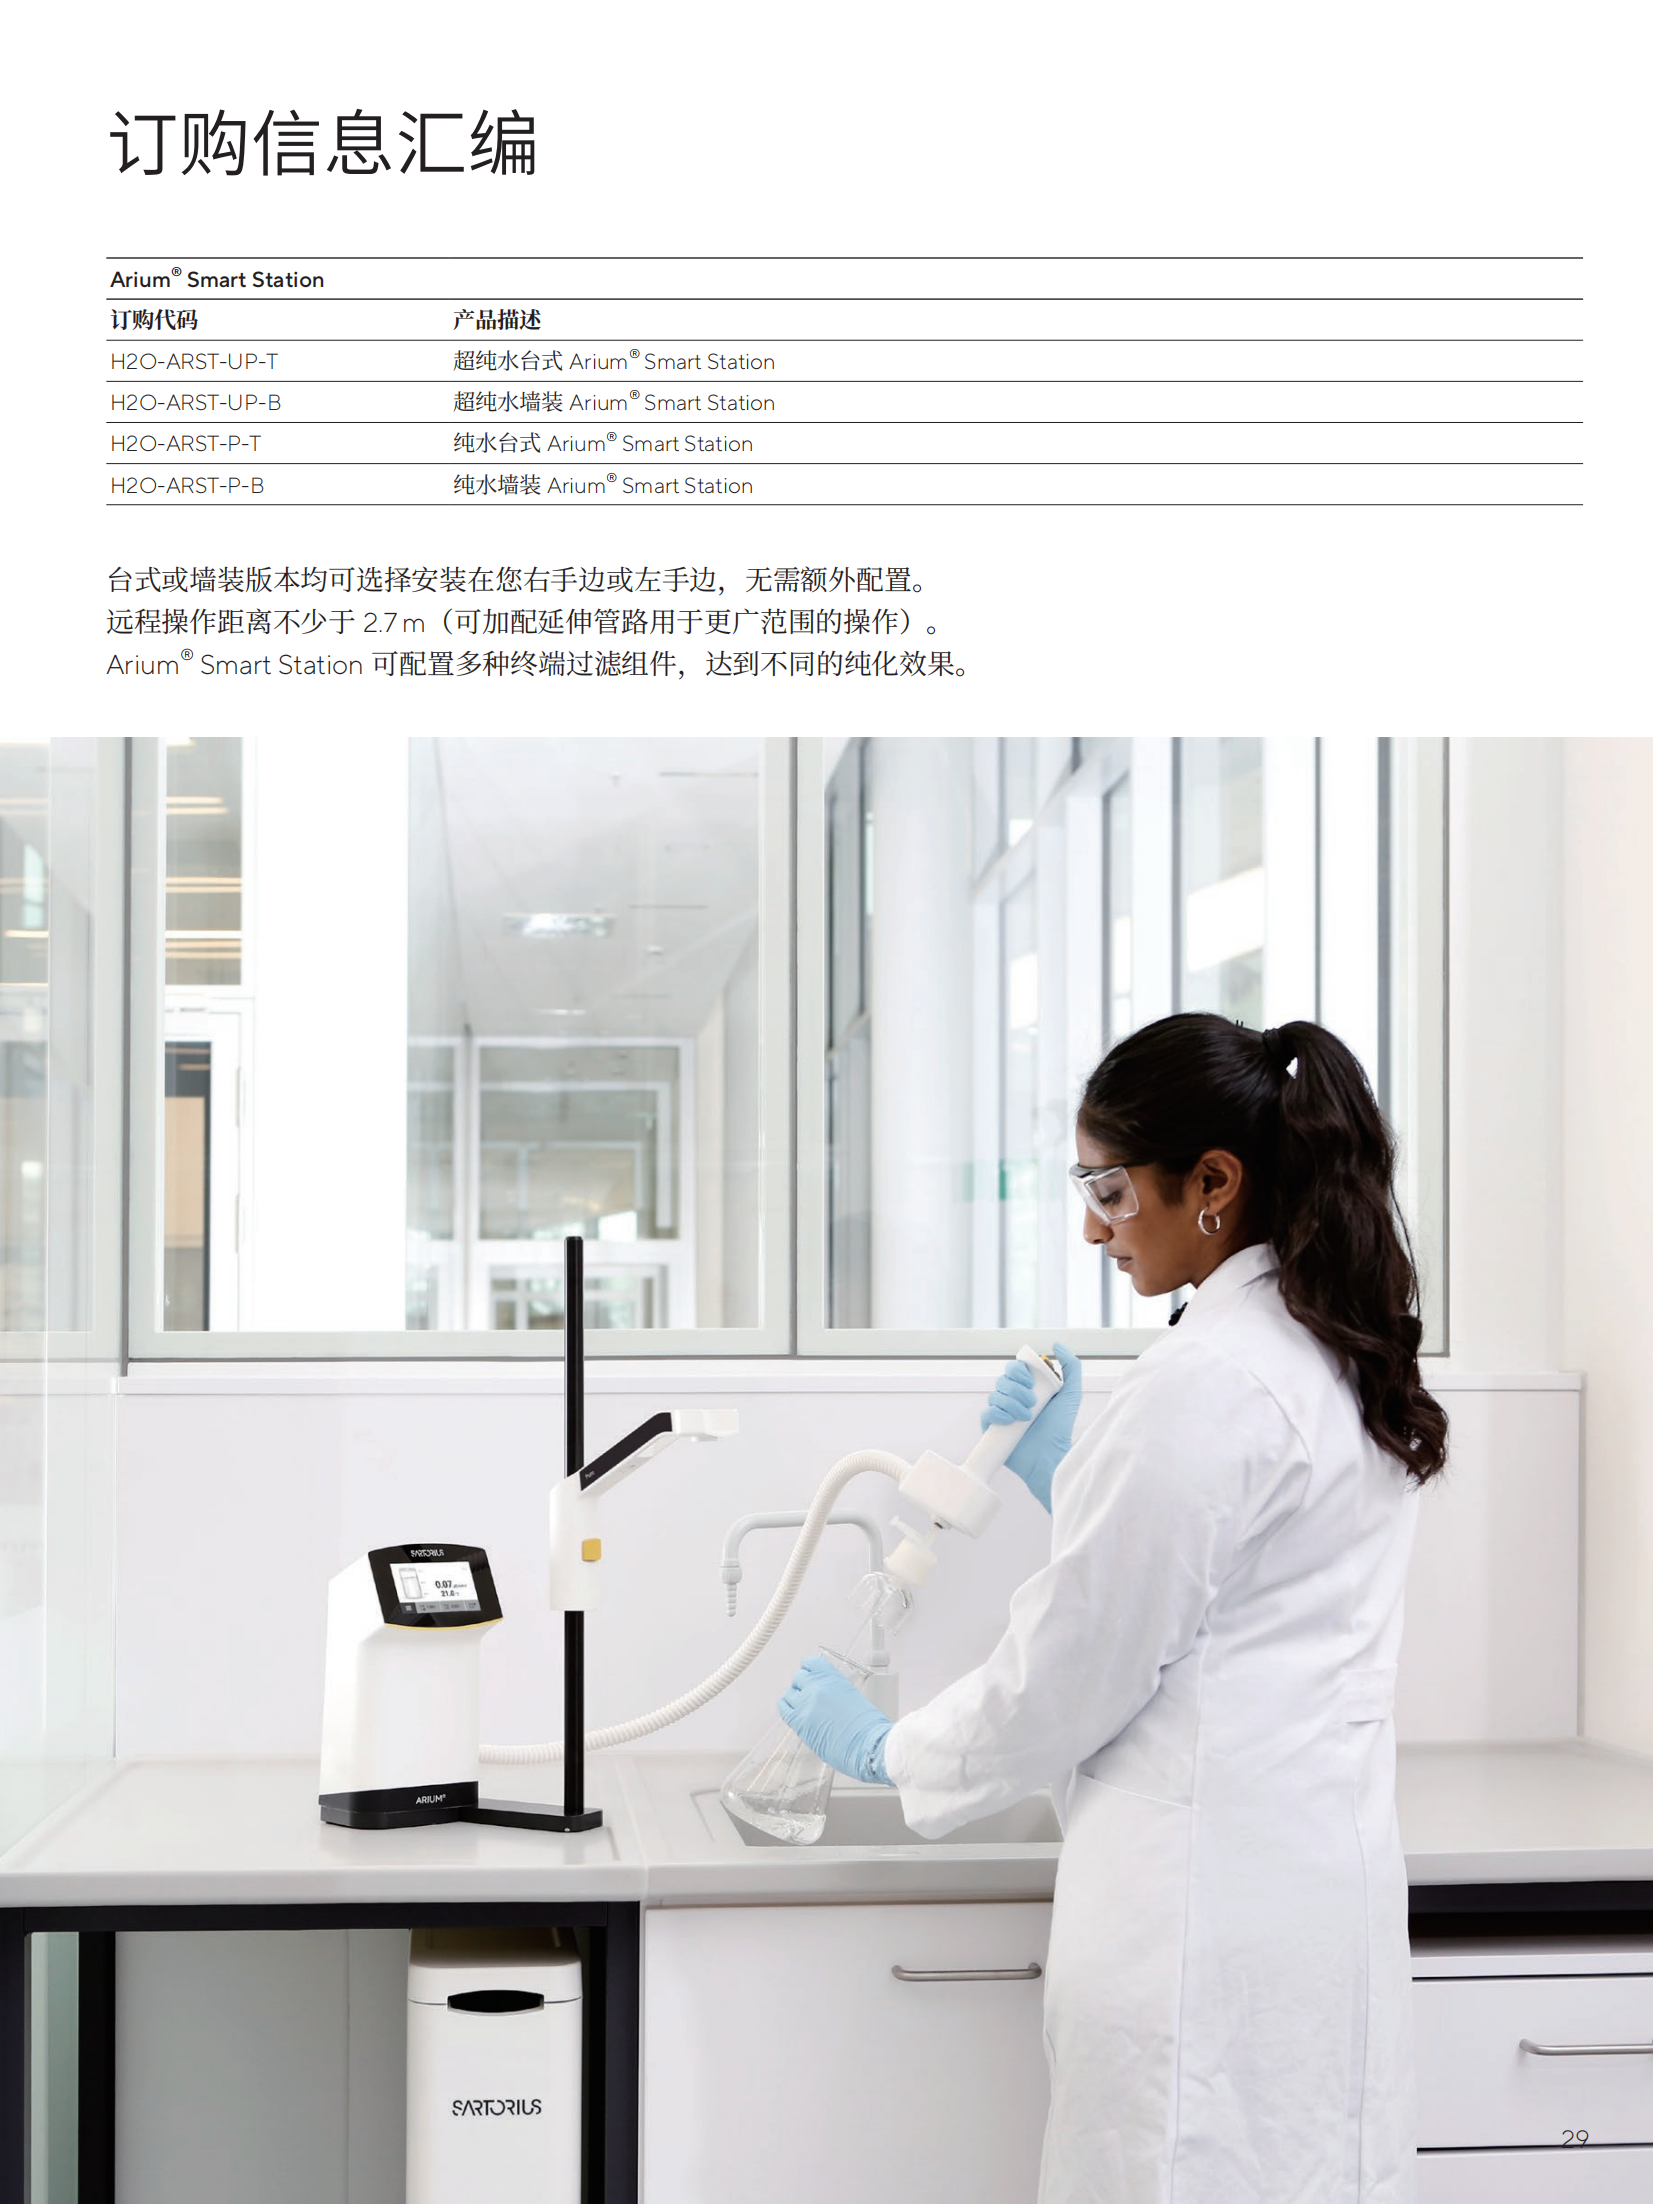 lab-water-brochure-zh-l-202105-sartorius-pdf-data_28.png